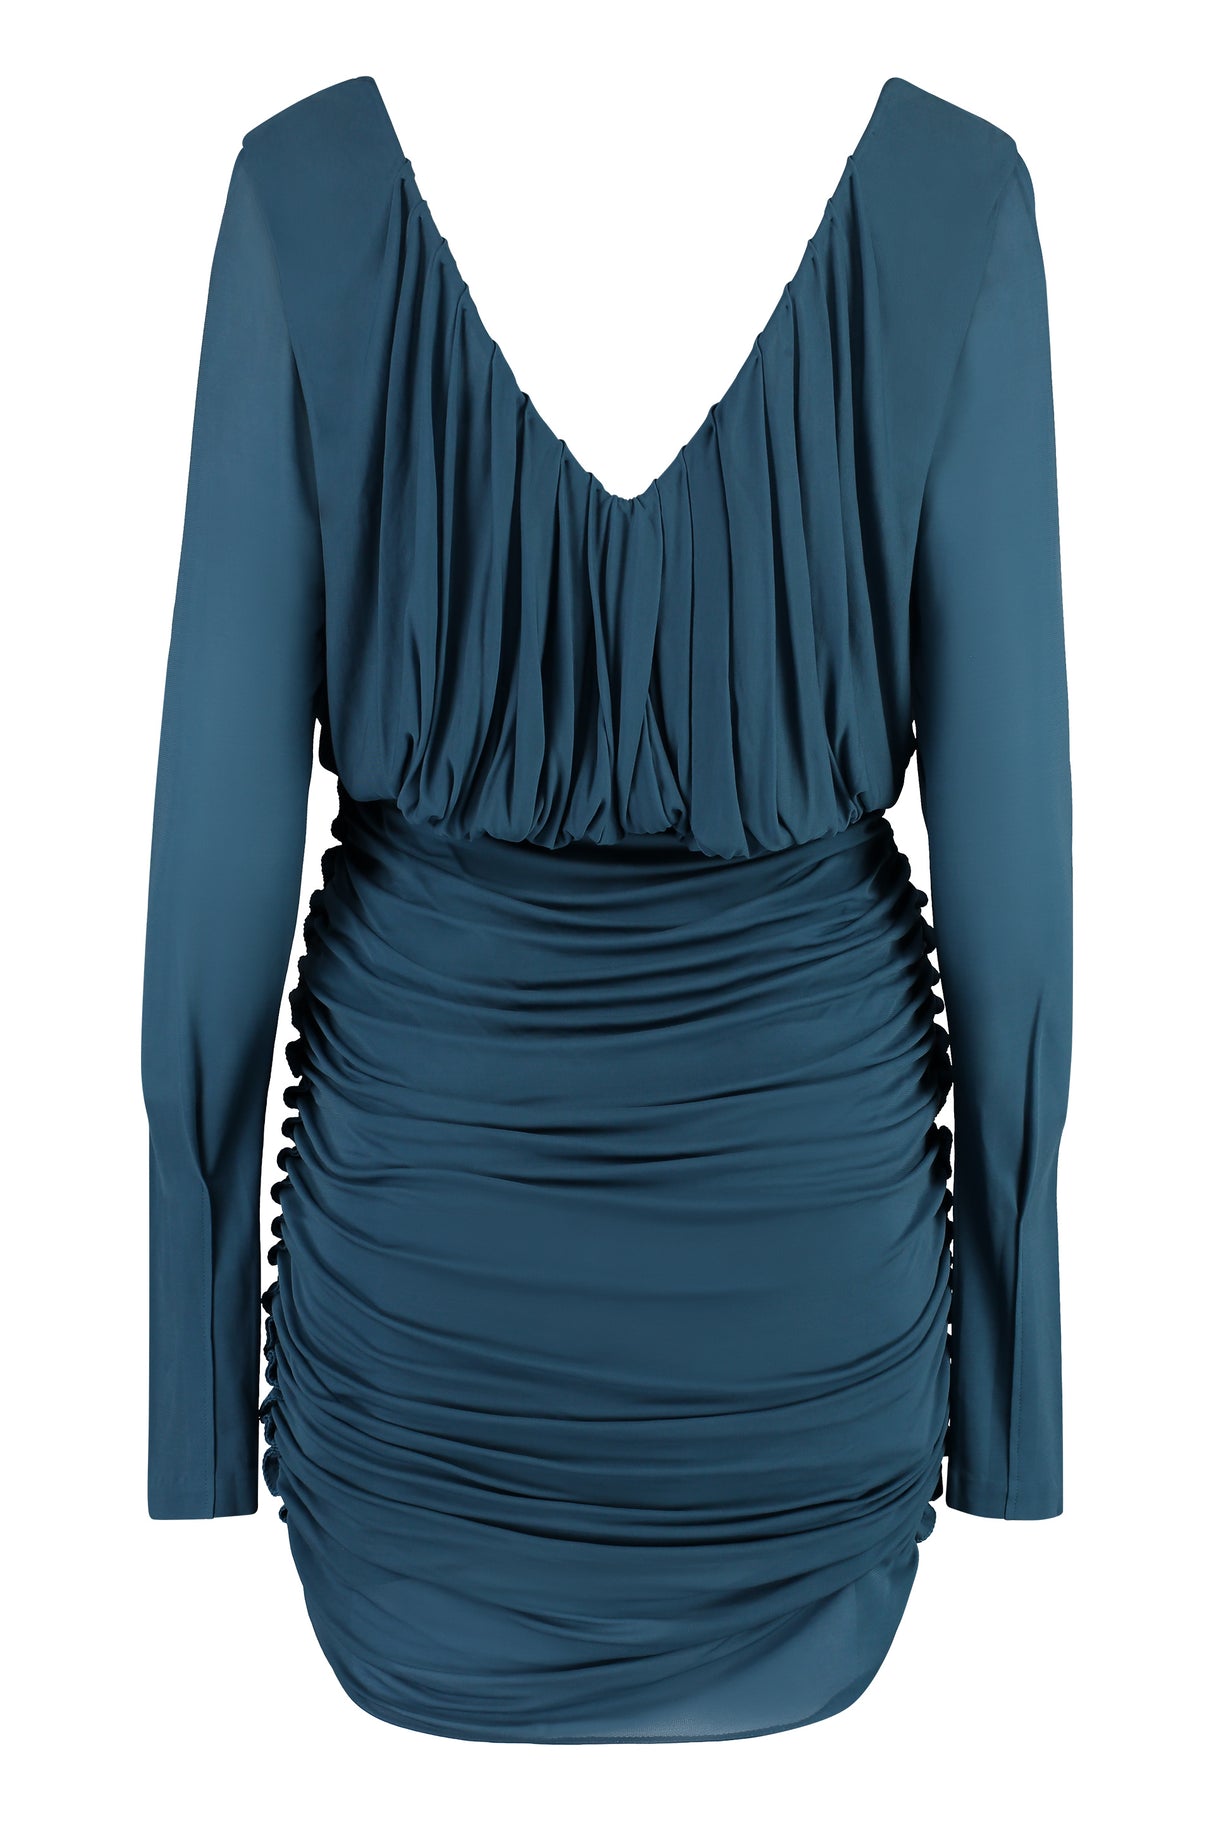 فستان نسائي منسوج بلون الأزرق لموسم الصيف ٢٠٢٣